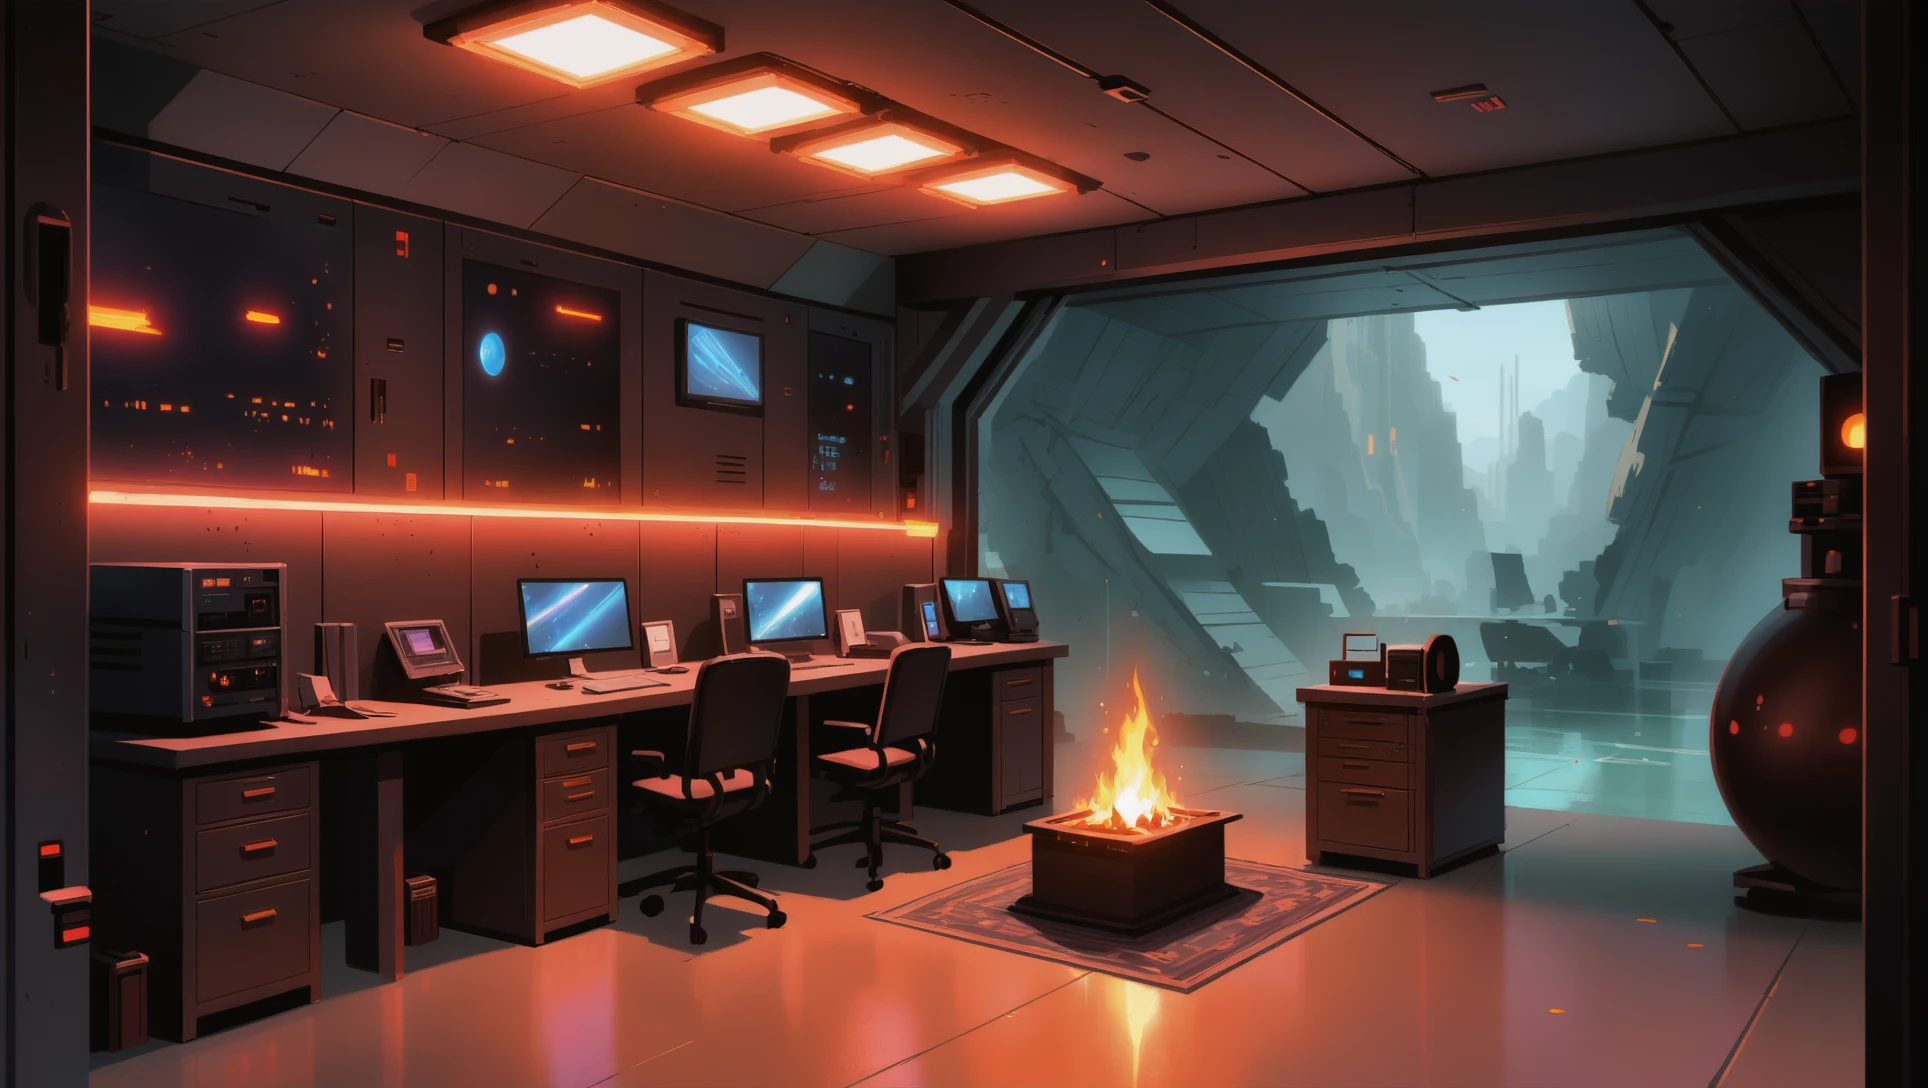 Matte Painting im Anime-Stil, Countdown-Raum für Doomsday-Geräte \(Zimmer\) In einer gemütlichen,rustikale Science-Fiction-Siedlung in einer Höhle